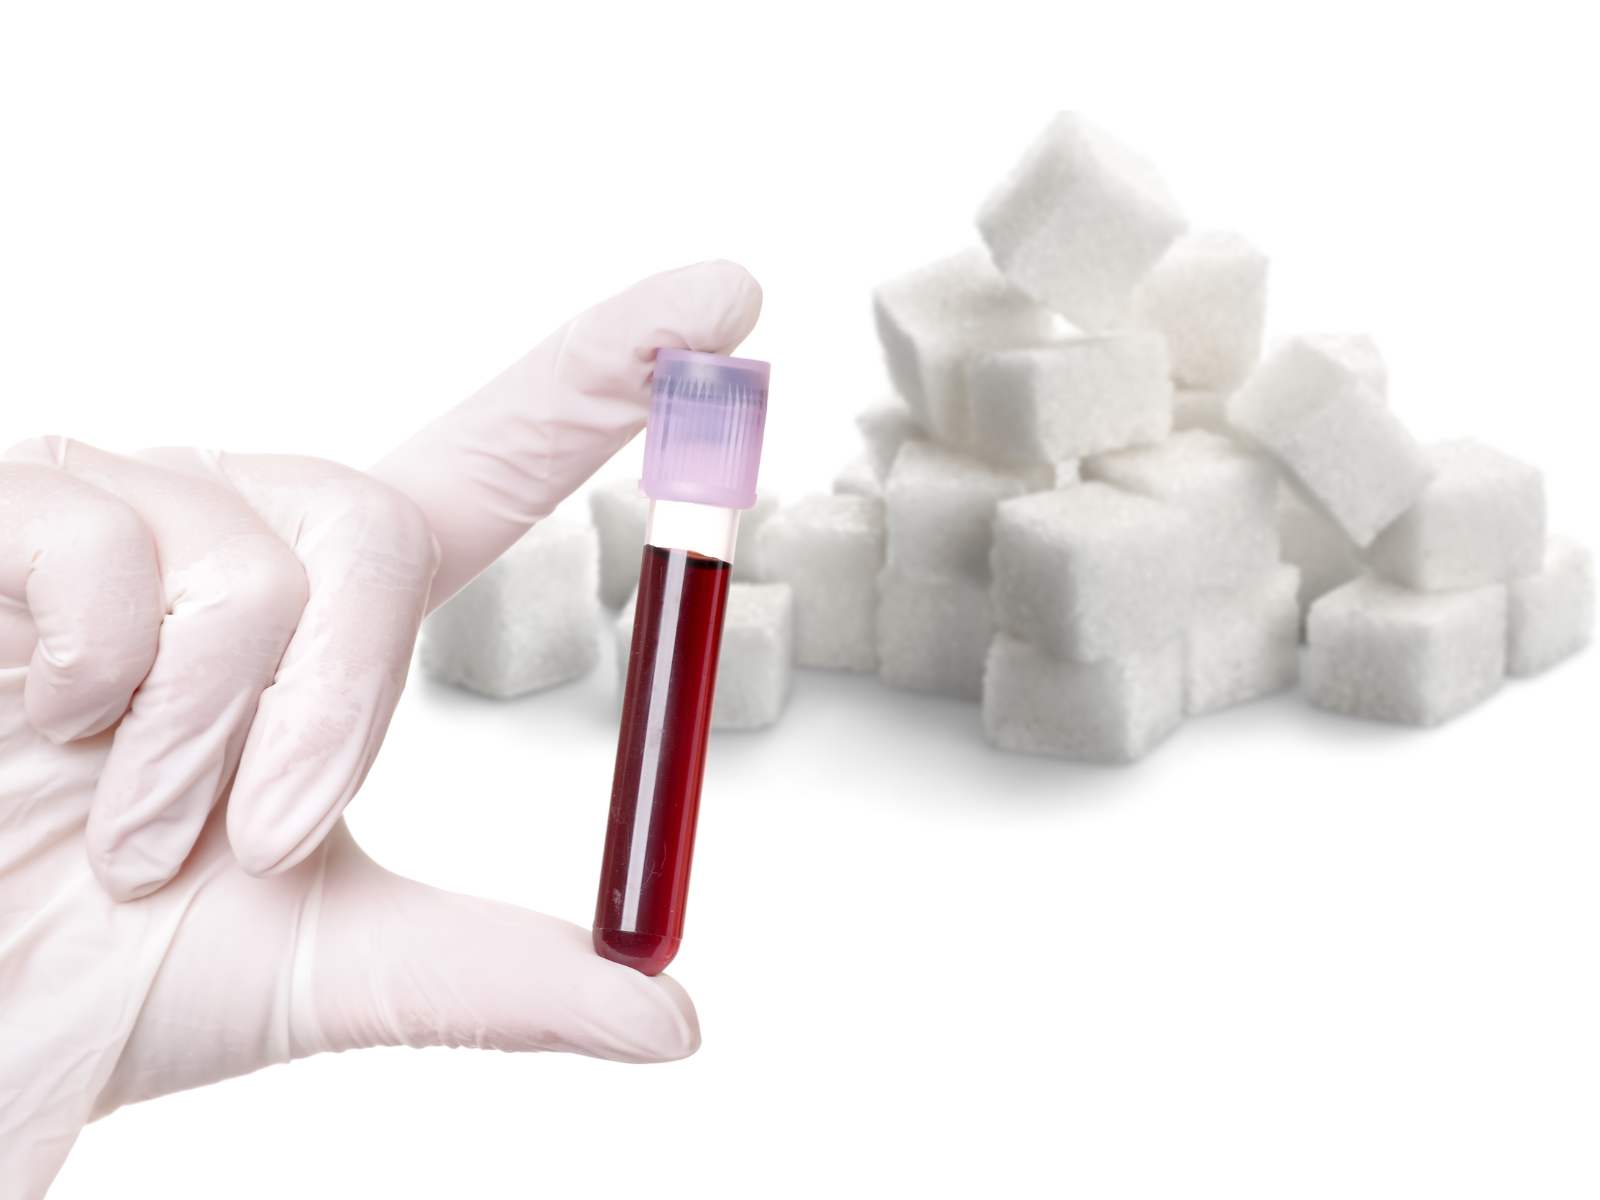 Krzywa cukrowa i krzywa insulinowa – 2 podstawowe badania w diagnostyce cukrzycy